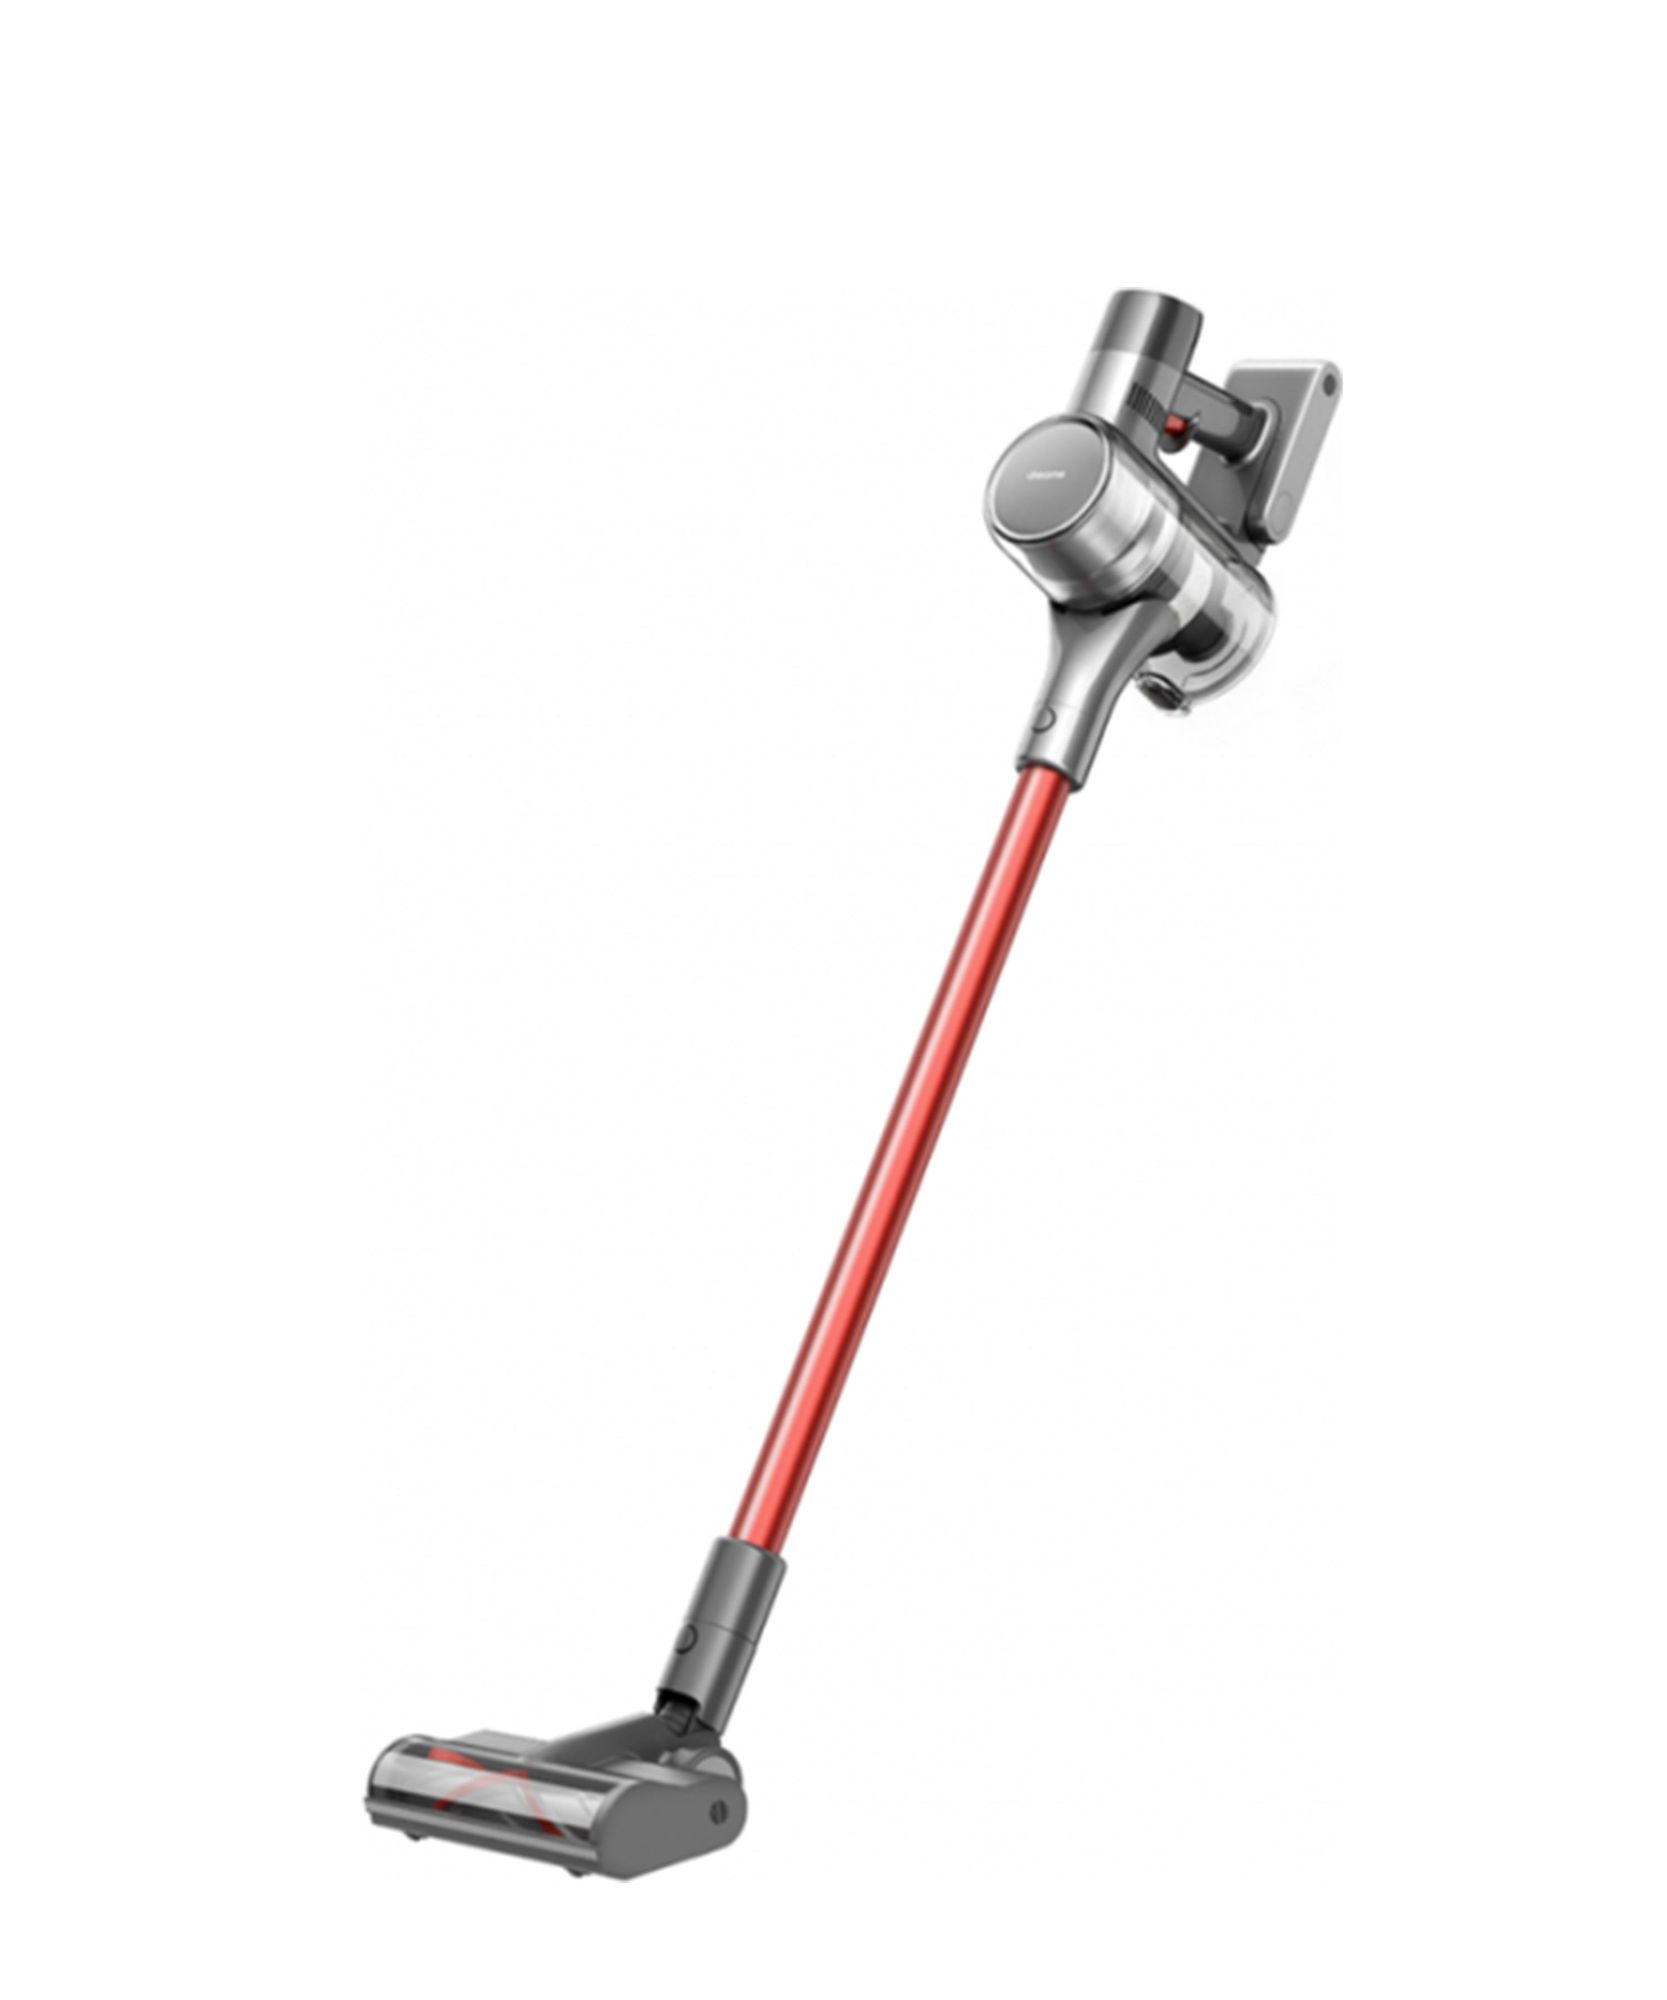 Пылесос вертикальный Dreame T20 Cordless Vacuum Cleaner